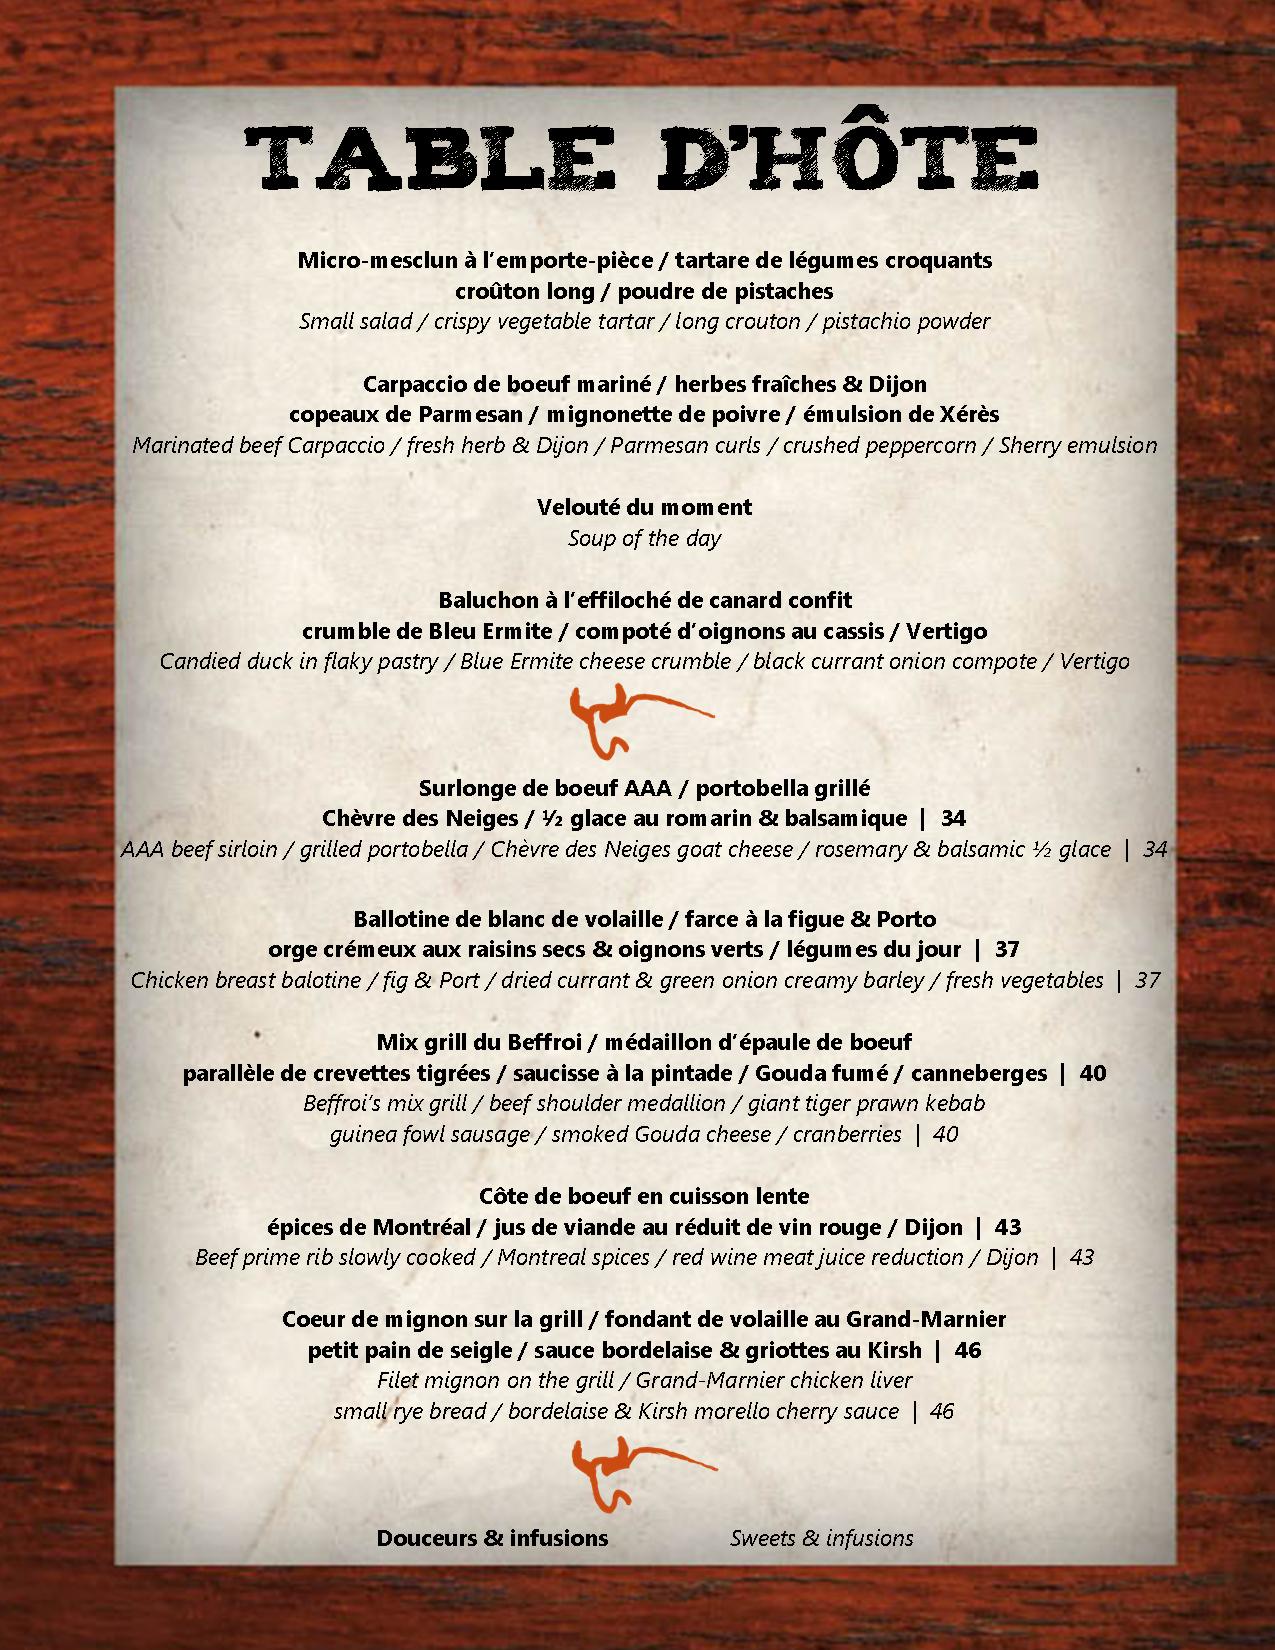 Beffroi_Steakhouse on Twitter: "Nouveau menu table d'hôte du Beffroi